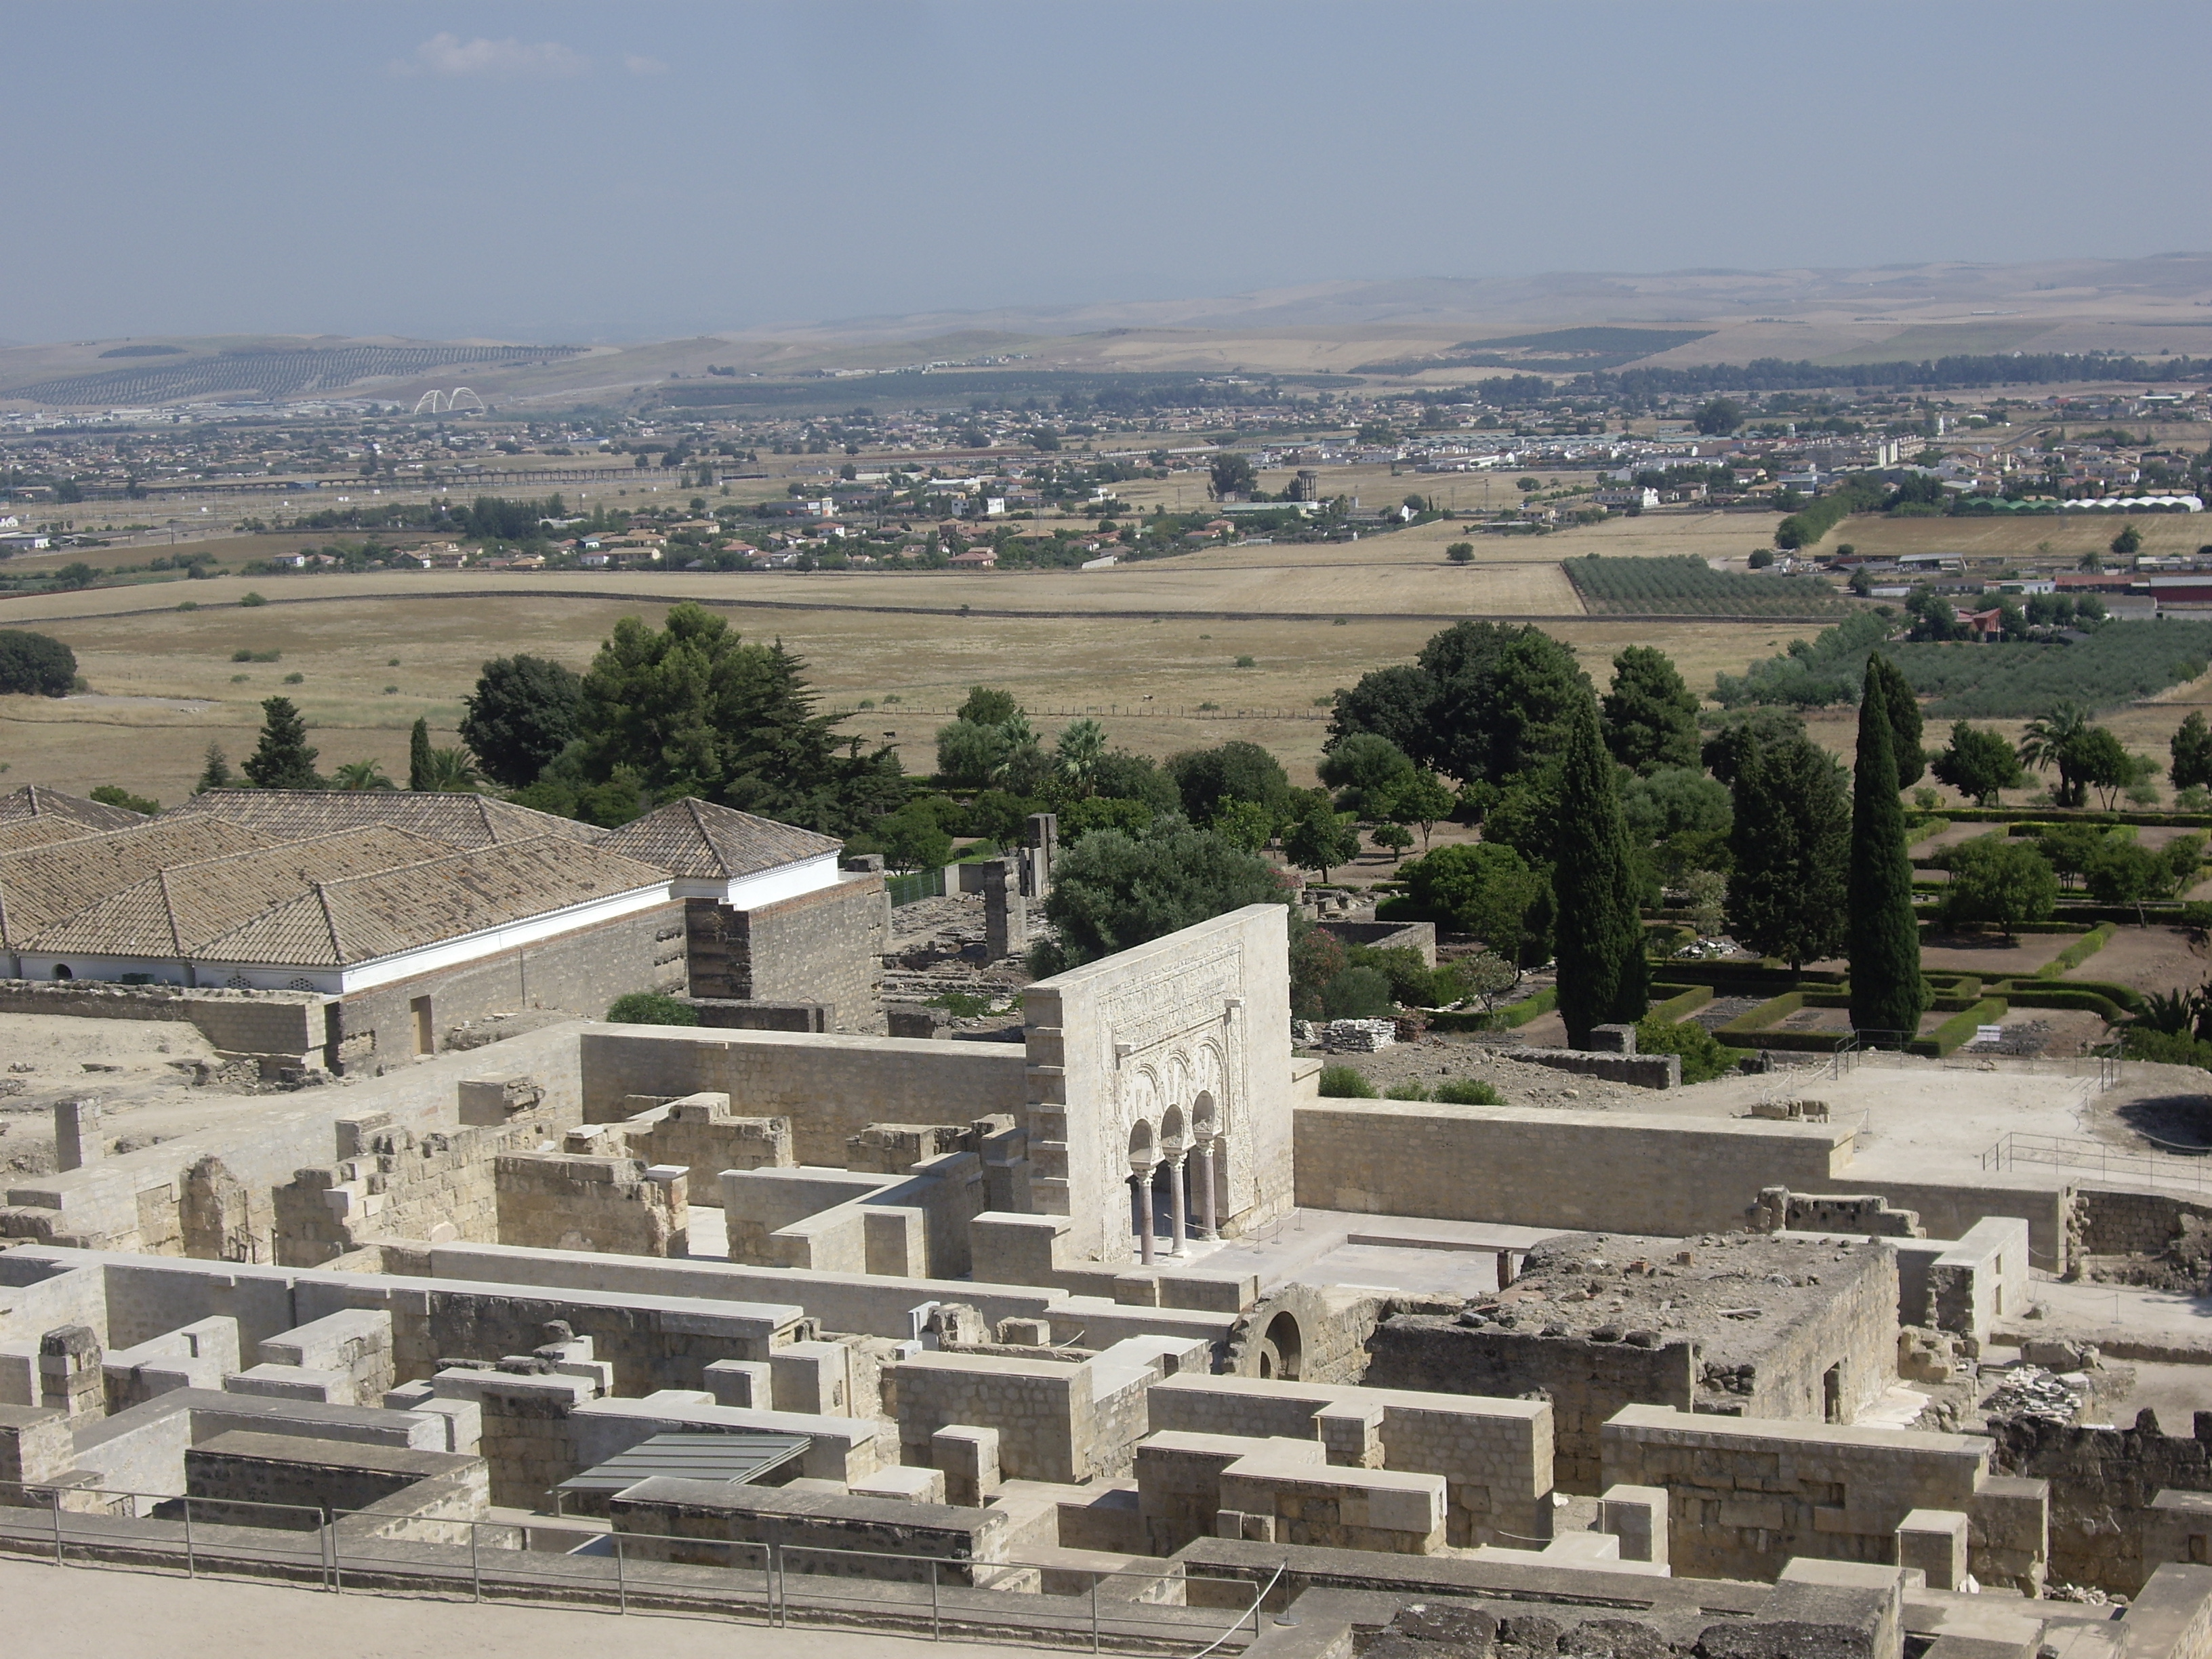 Vista de la terraza intermedia de la Medina Azahara, con la Casa de Yafar y el Salon Rico a la izquierda.